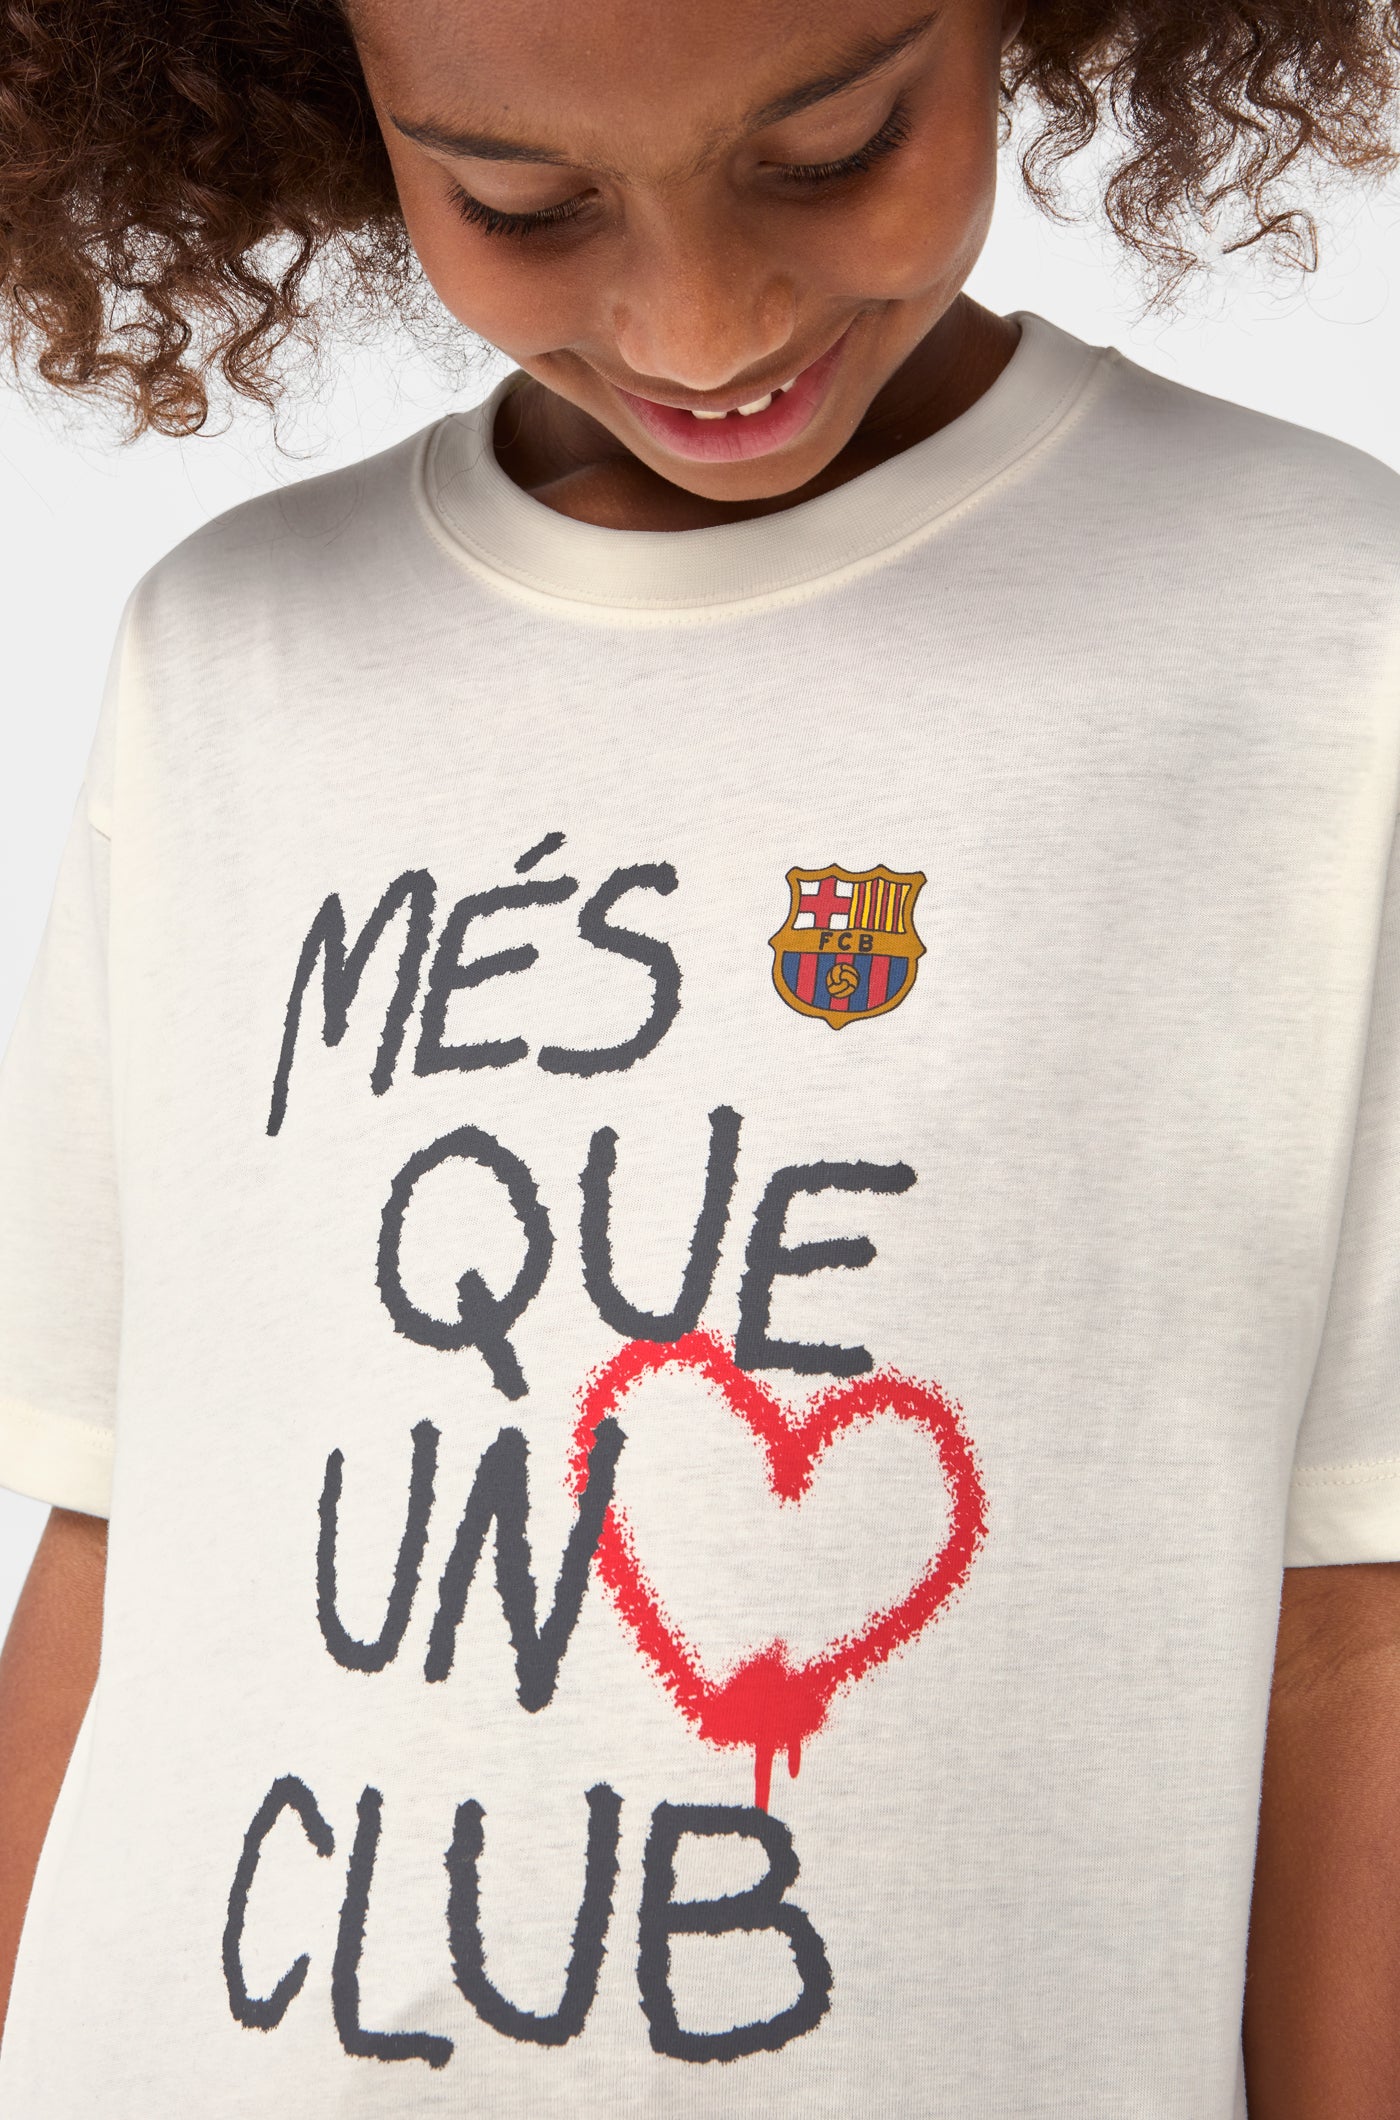 T-shirt Més que un club Barça– Junior